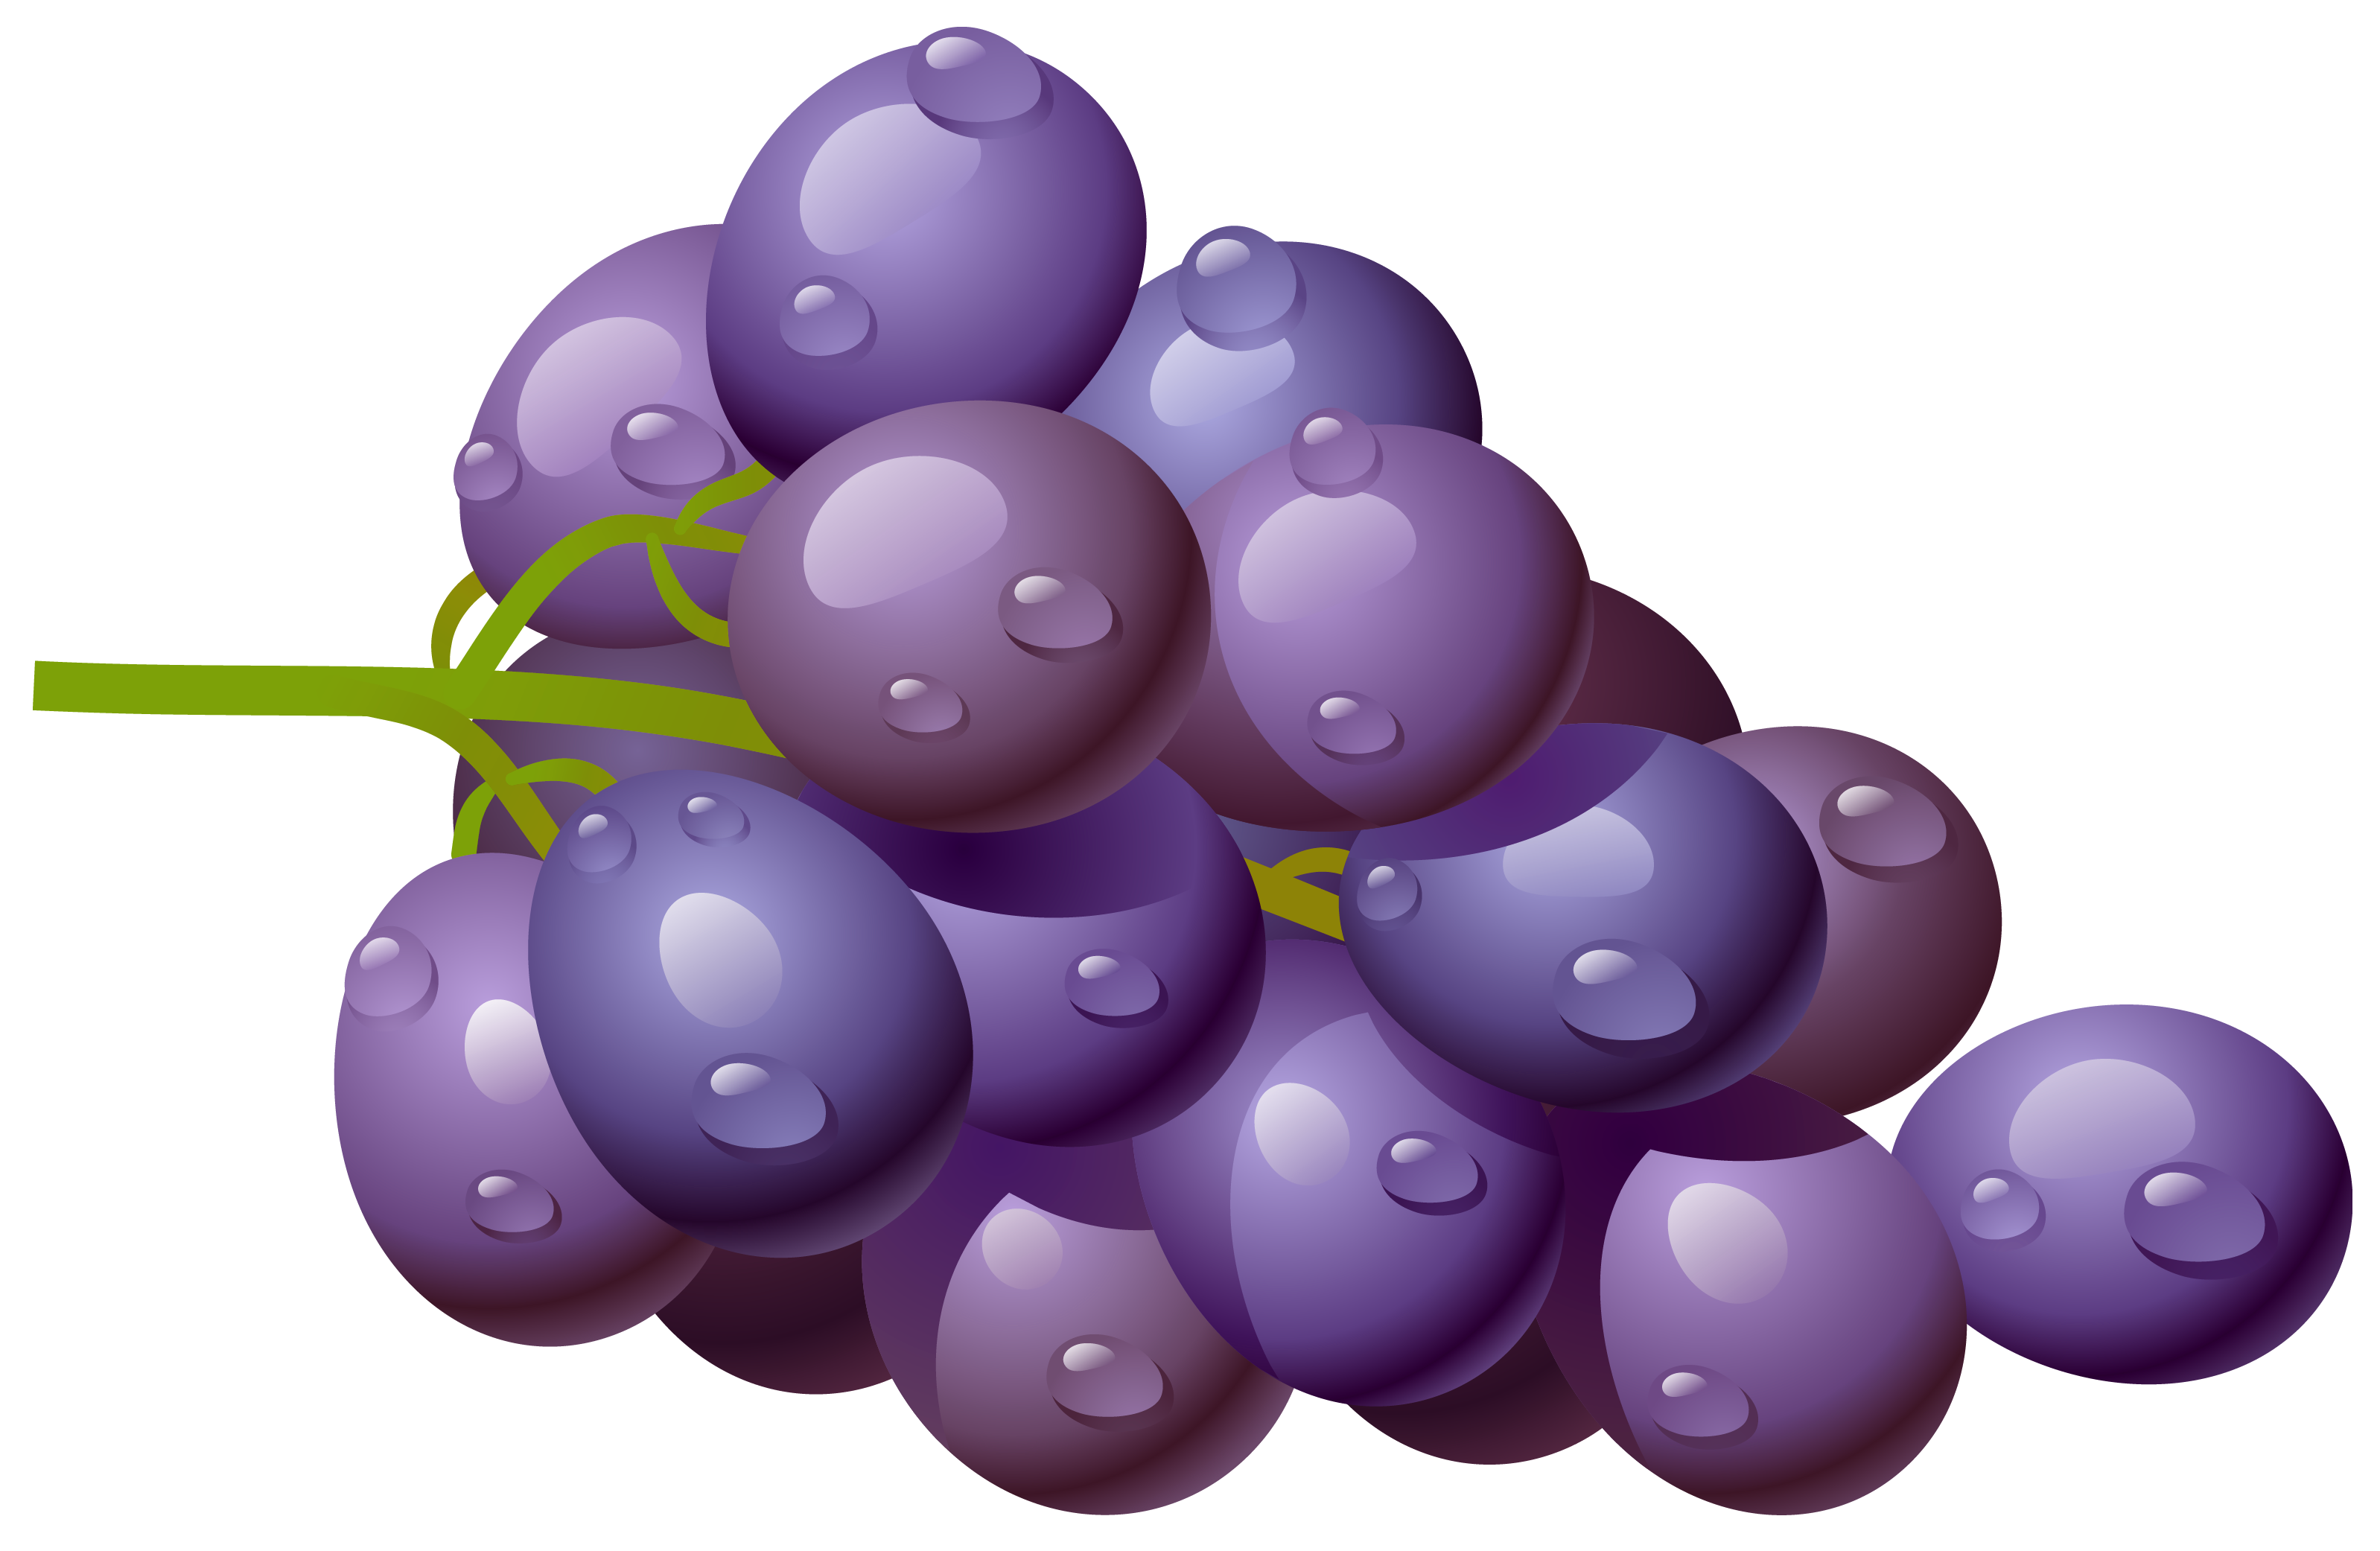 Grapes clip art at vector cli - Grape Clip Art